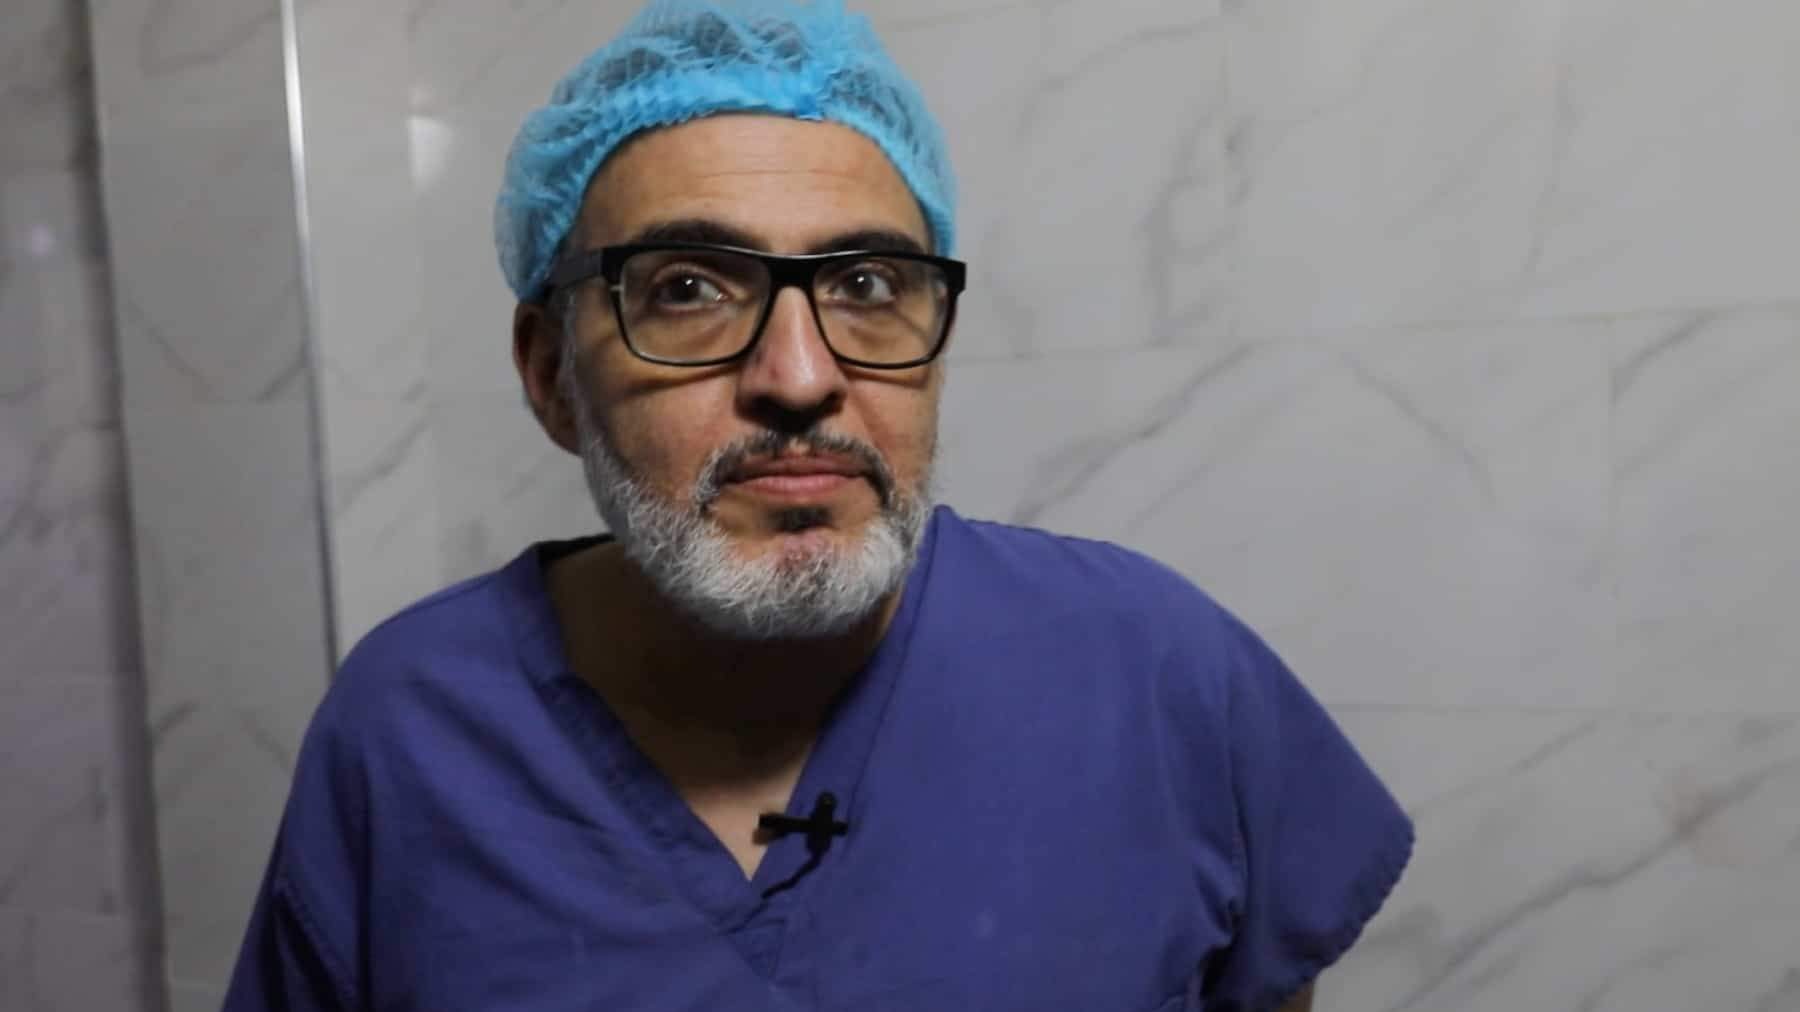 Holandija zabranila ulazak poznatom britansko-palestinskom hirurgu Abu Sittahu